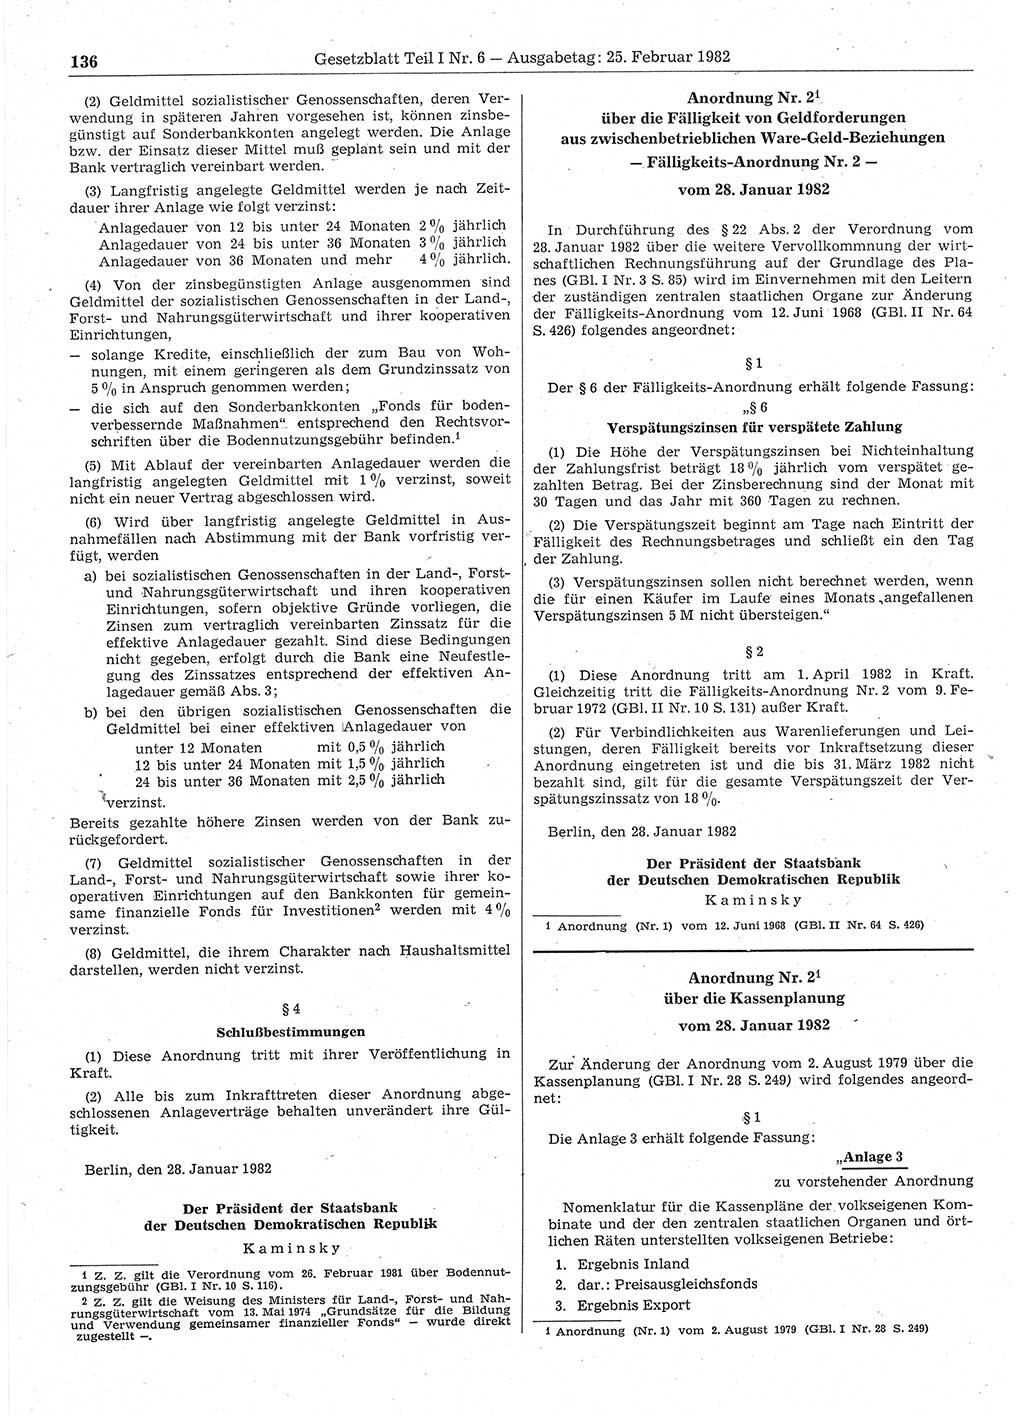 Gesetzblatt (GBl.) der Deutschen Demokratischen Republik (DDR) Teil Ⅰ 1982, Seite 136 (GBl. DDR Ⅰ 1982, S. 136)